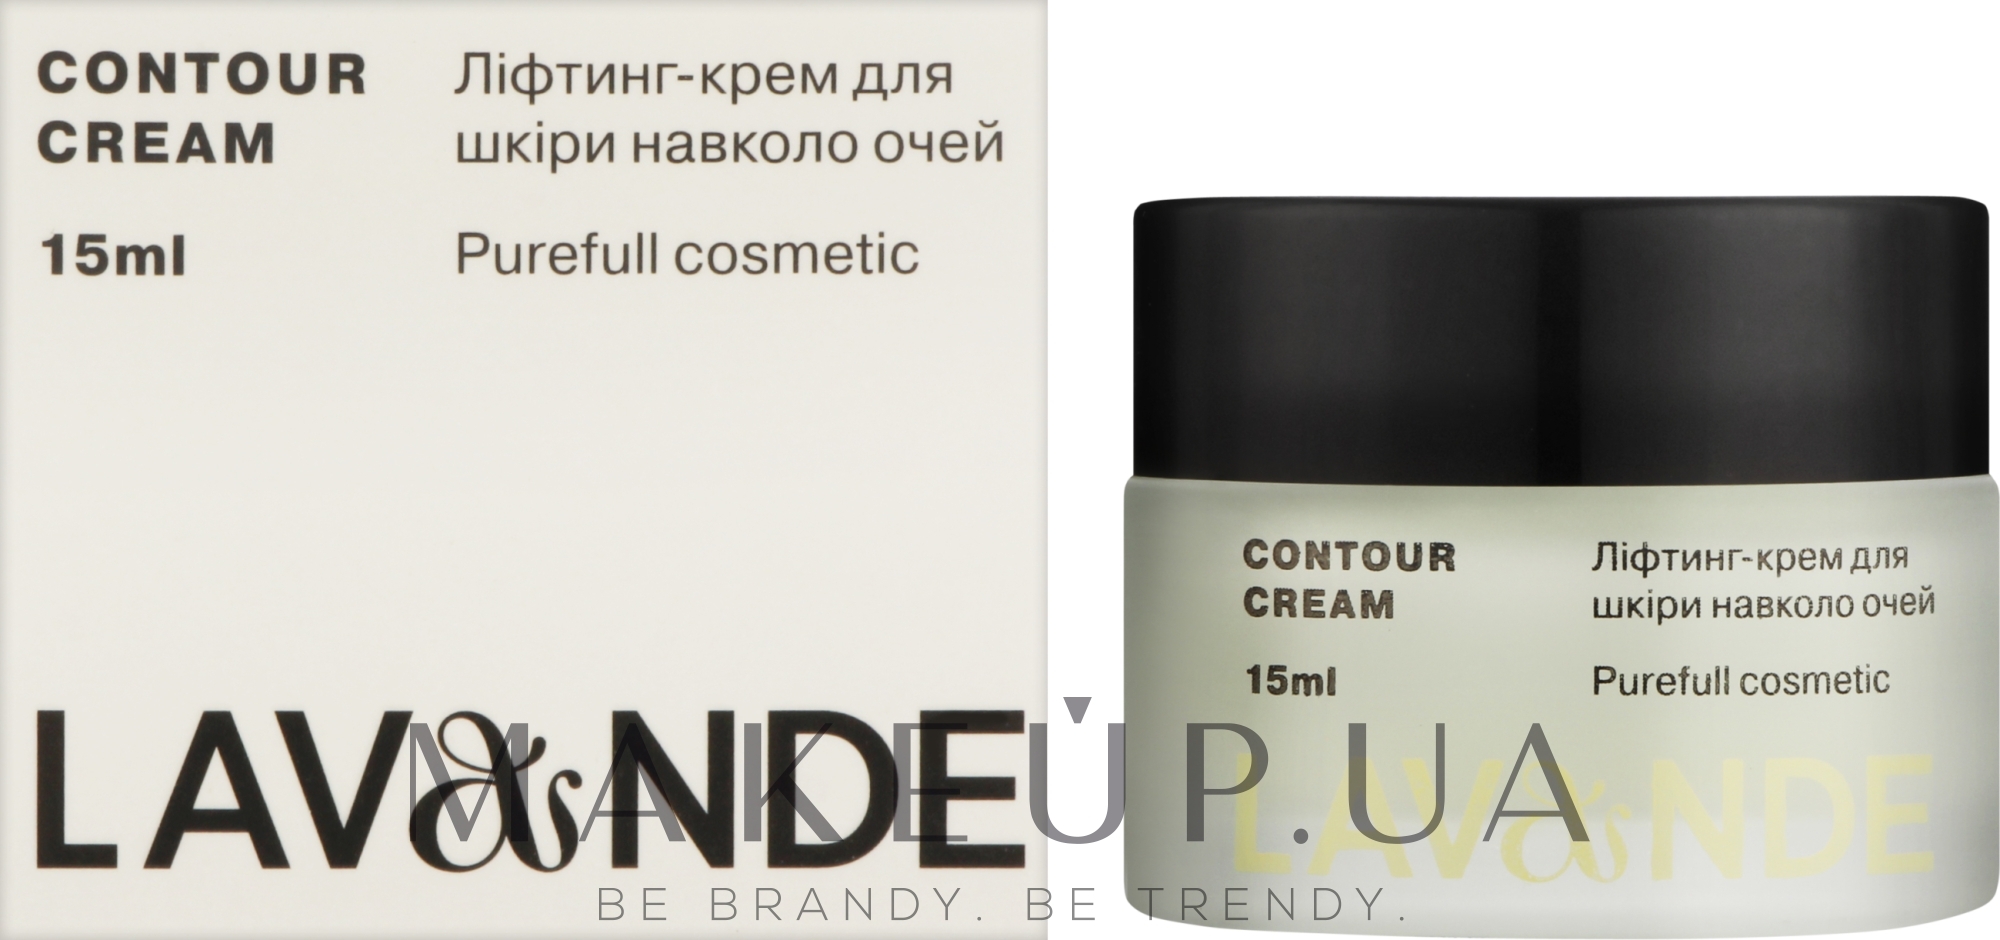 Ліфтинг-крем для шкіри навколо очей - Lavande Contour Cream — фото 15ml